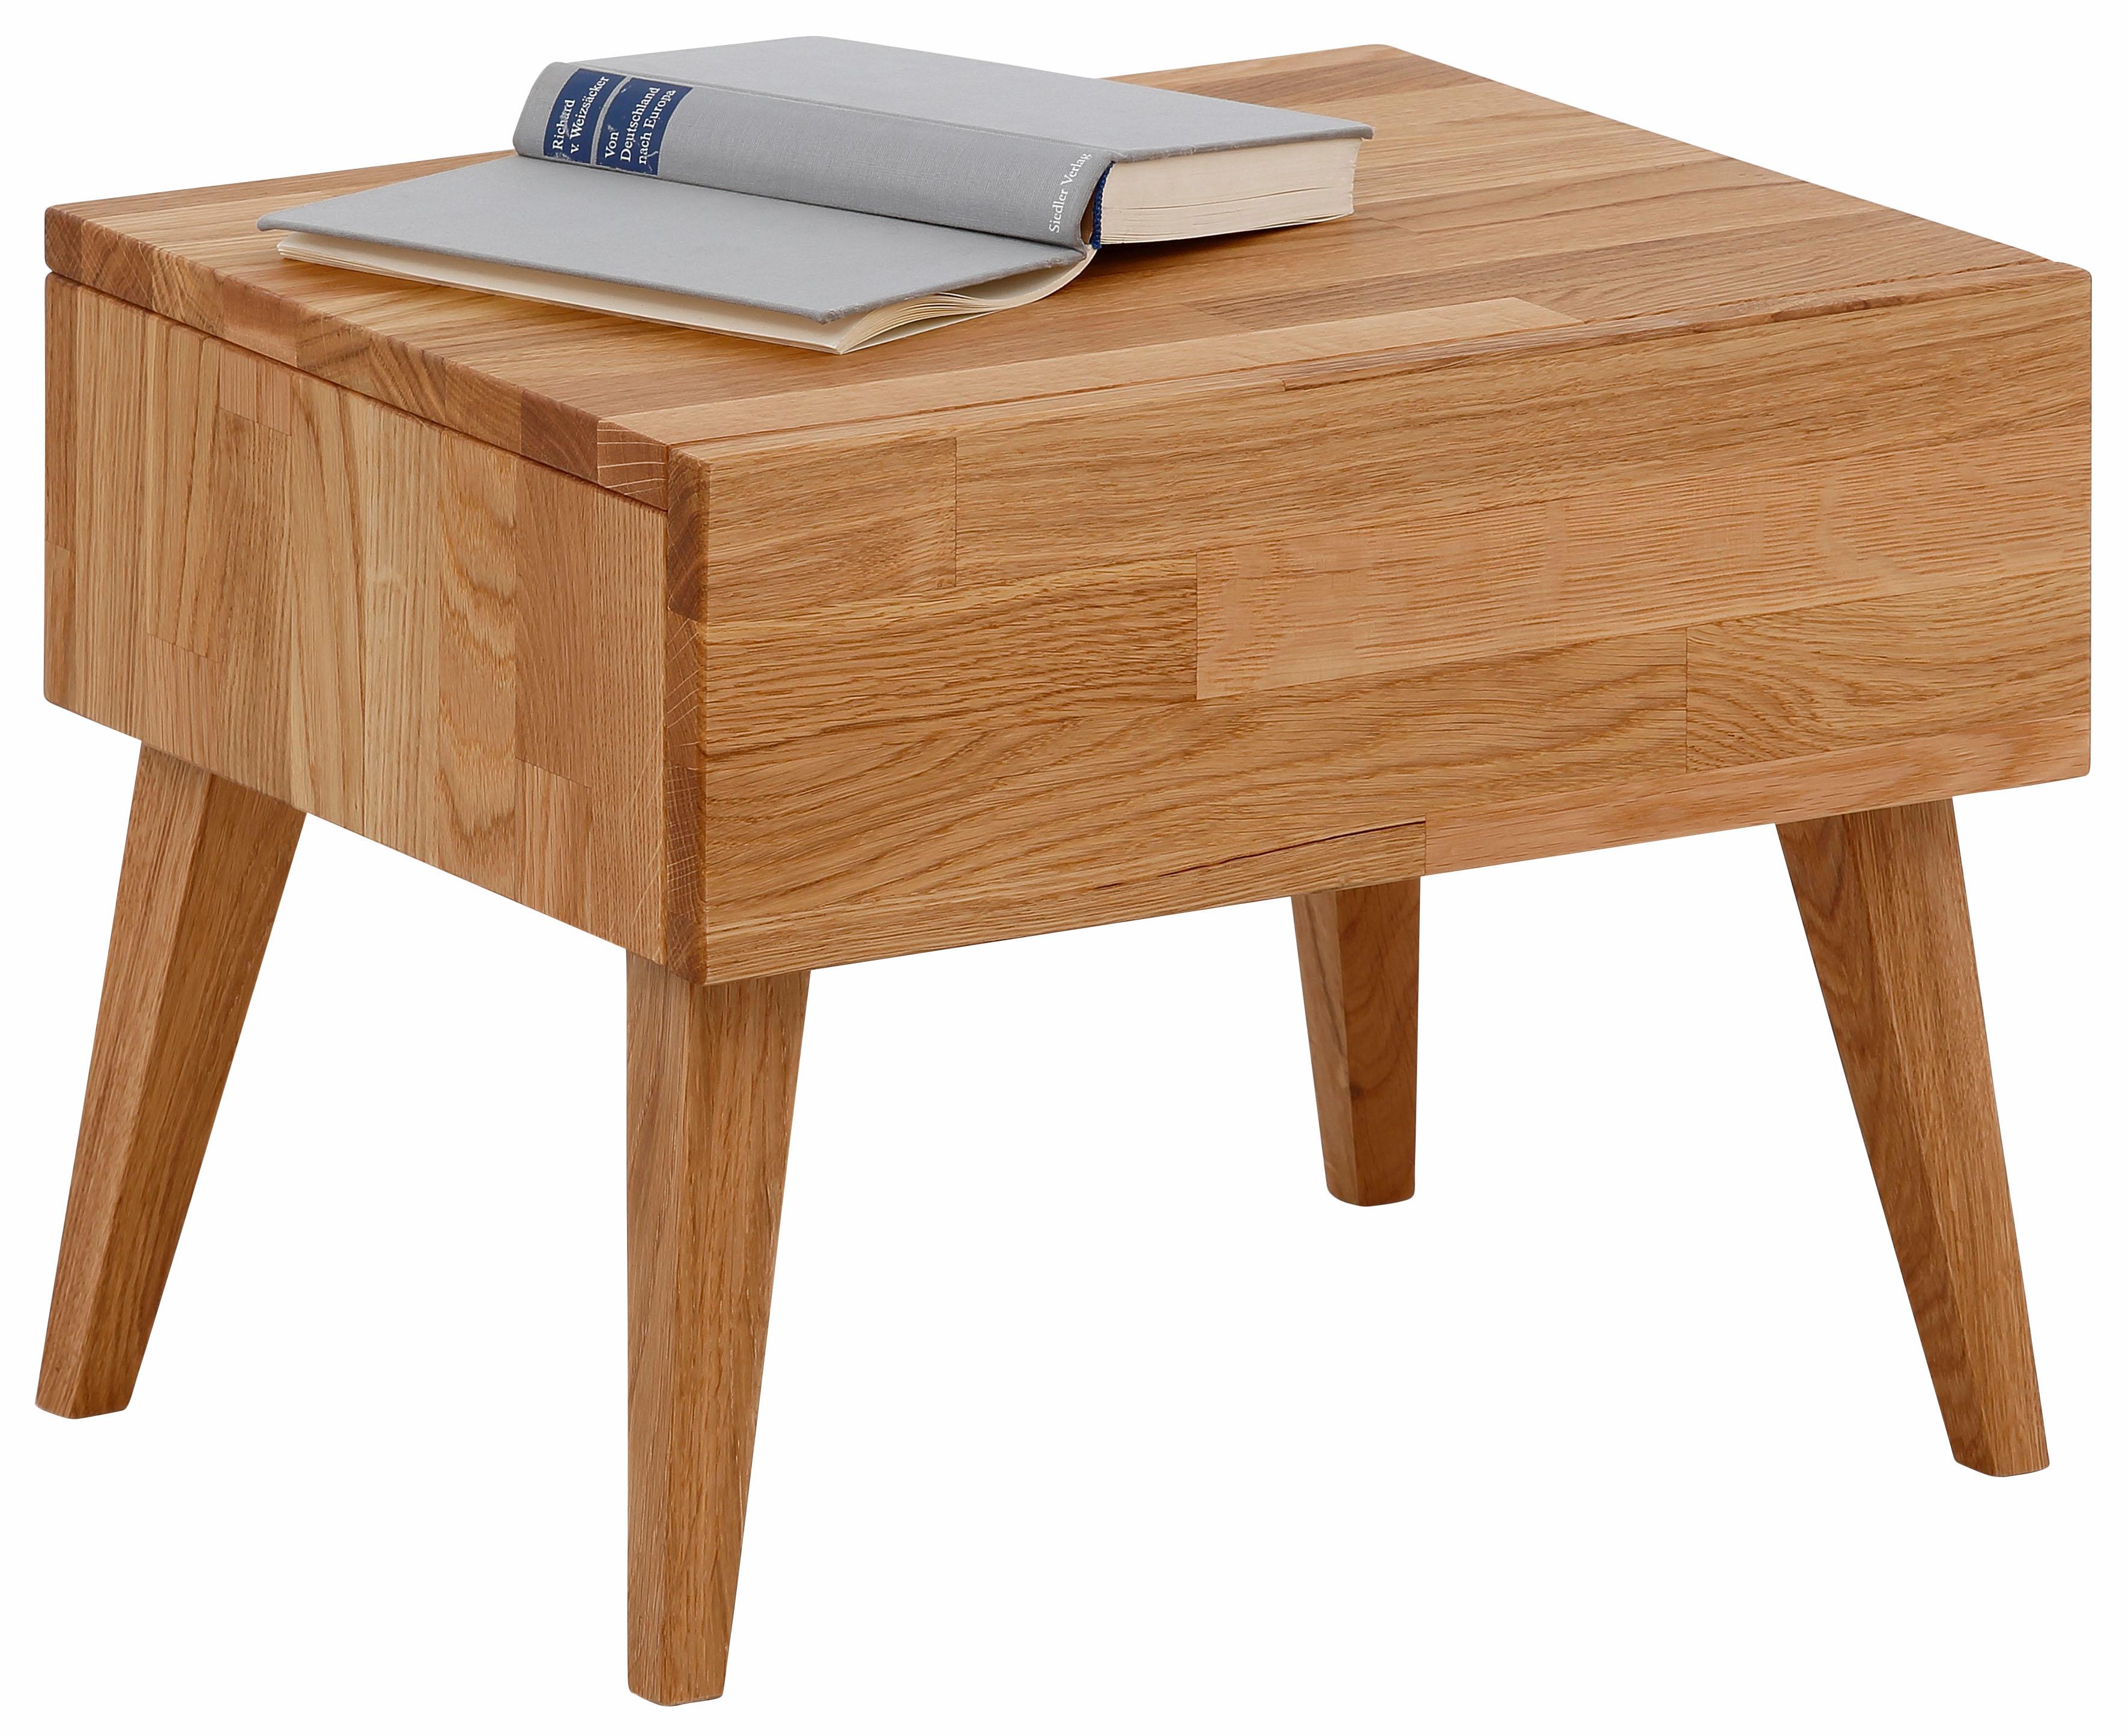 Home affaire Nachttisch Natali, mit einer Schublade, aus massiver Eiche, Breite 45 cm